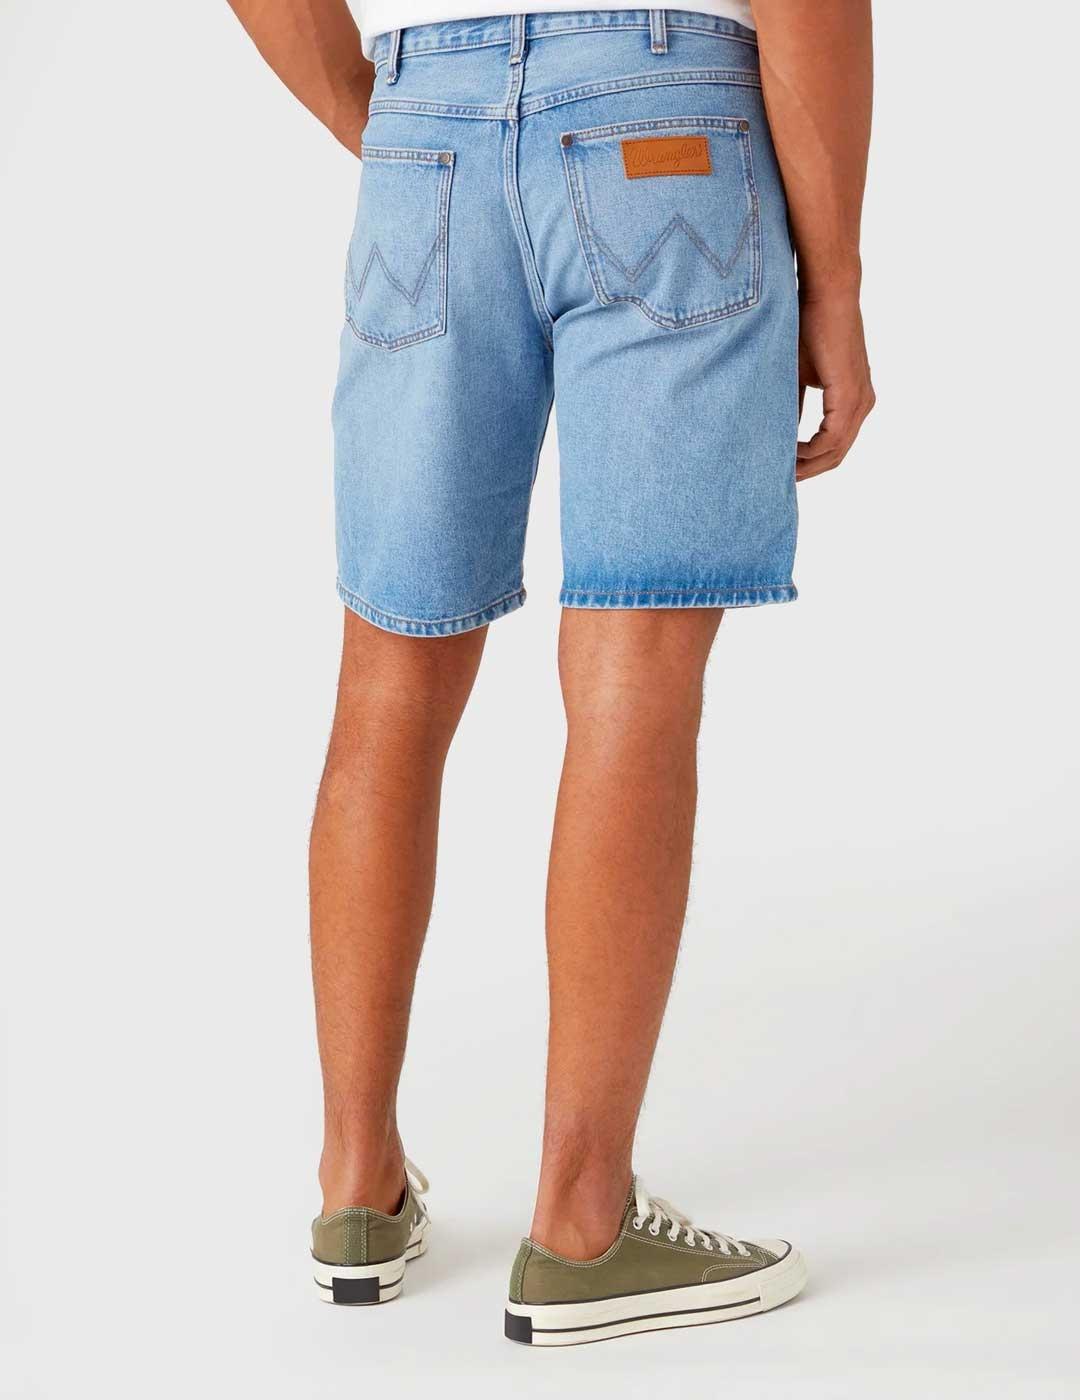 Pantalón corto Wrangler Frontier Eightball azul para hombre